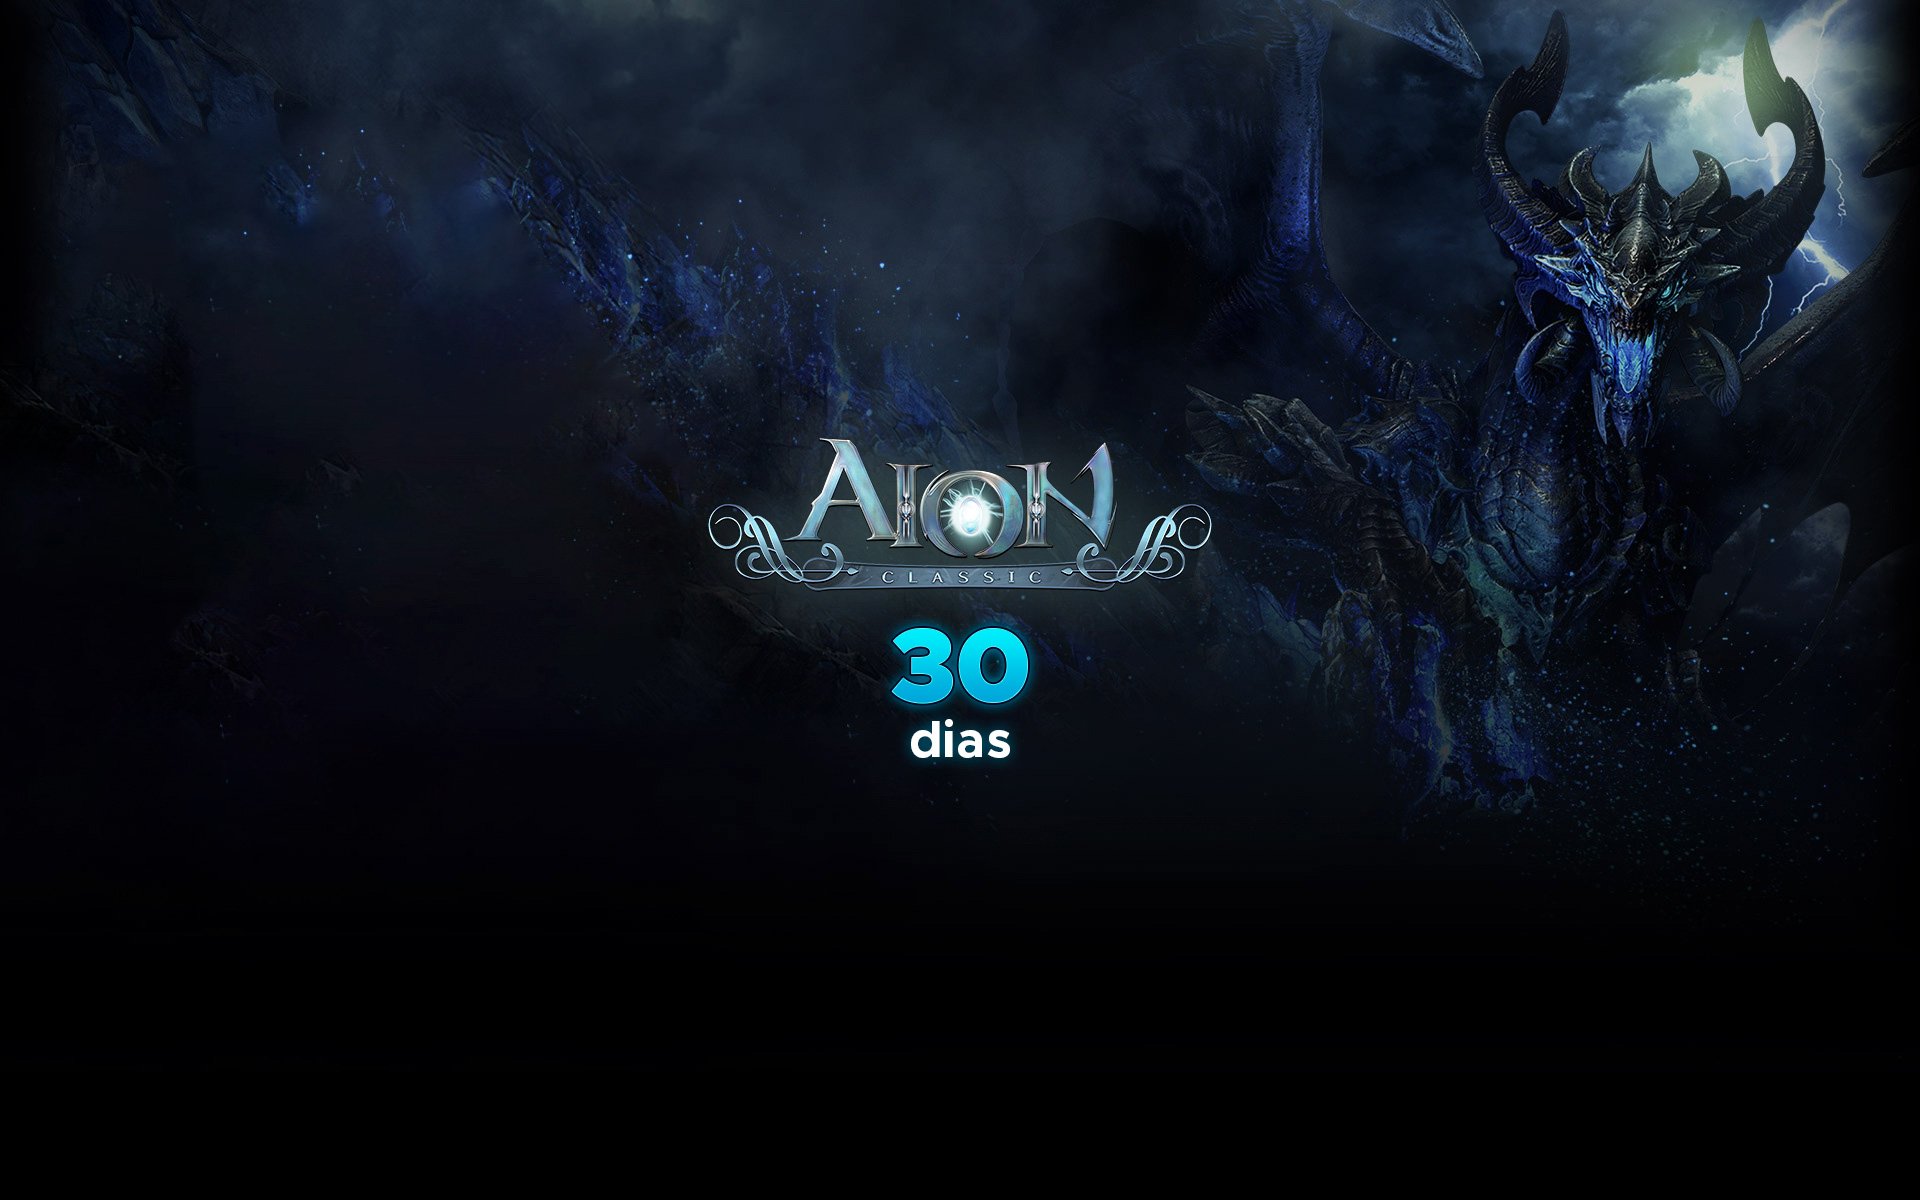 Aion Classic: Assinatura 30 dias cover